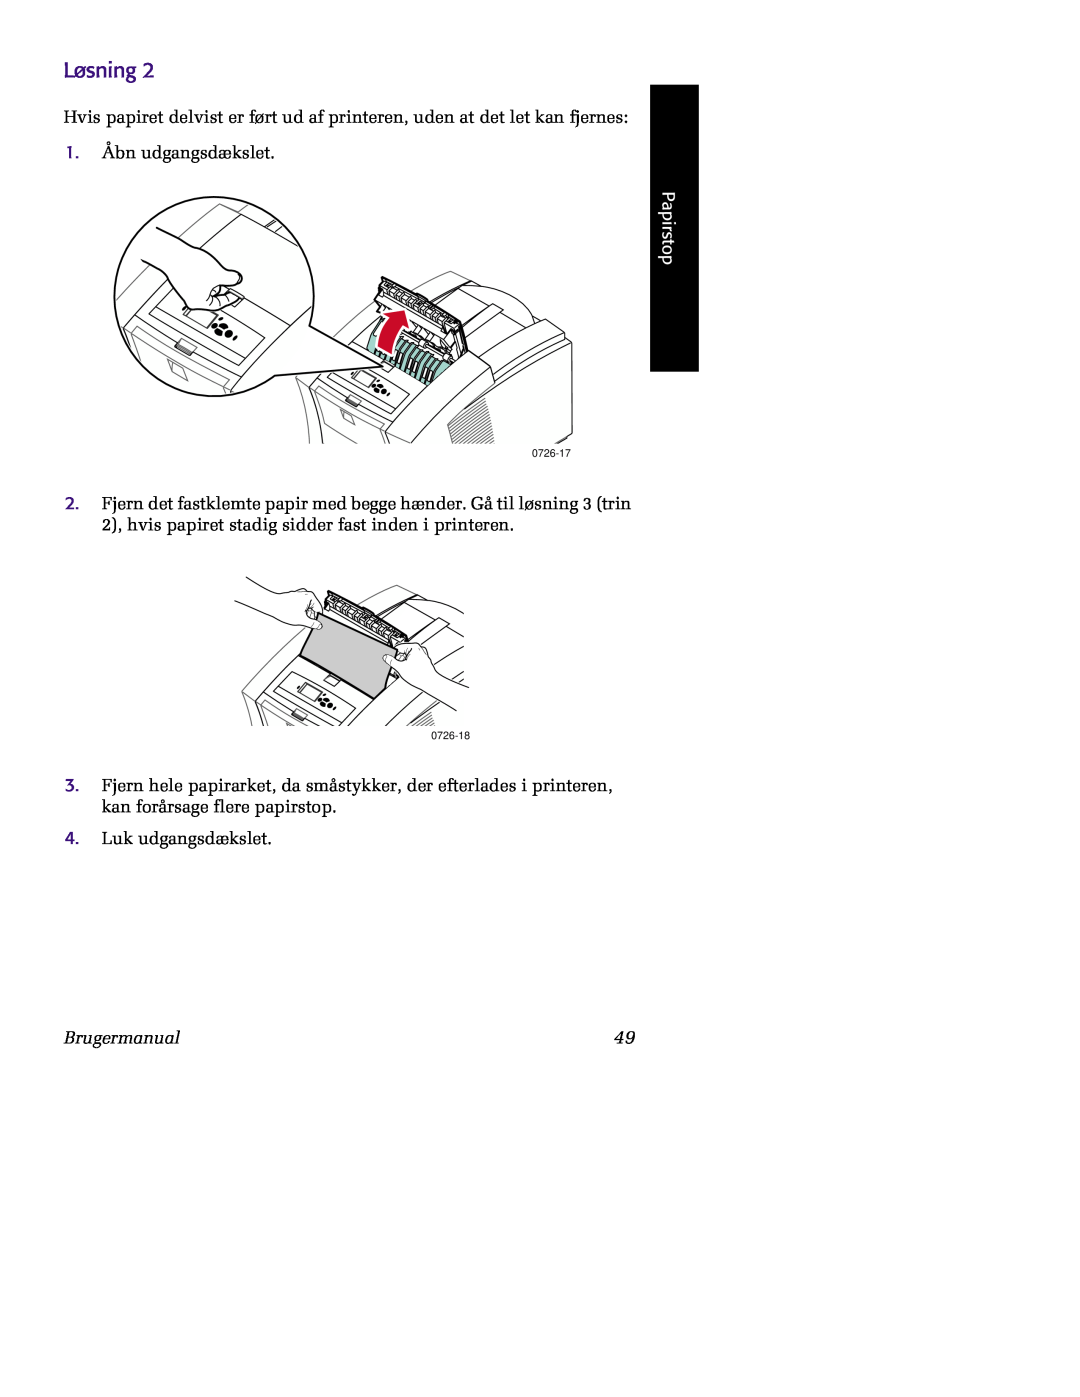 Tektronix 860 Løsning, 1. Åbn udgangsdækslet, Papirstop, Brugermanual 